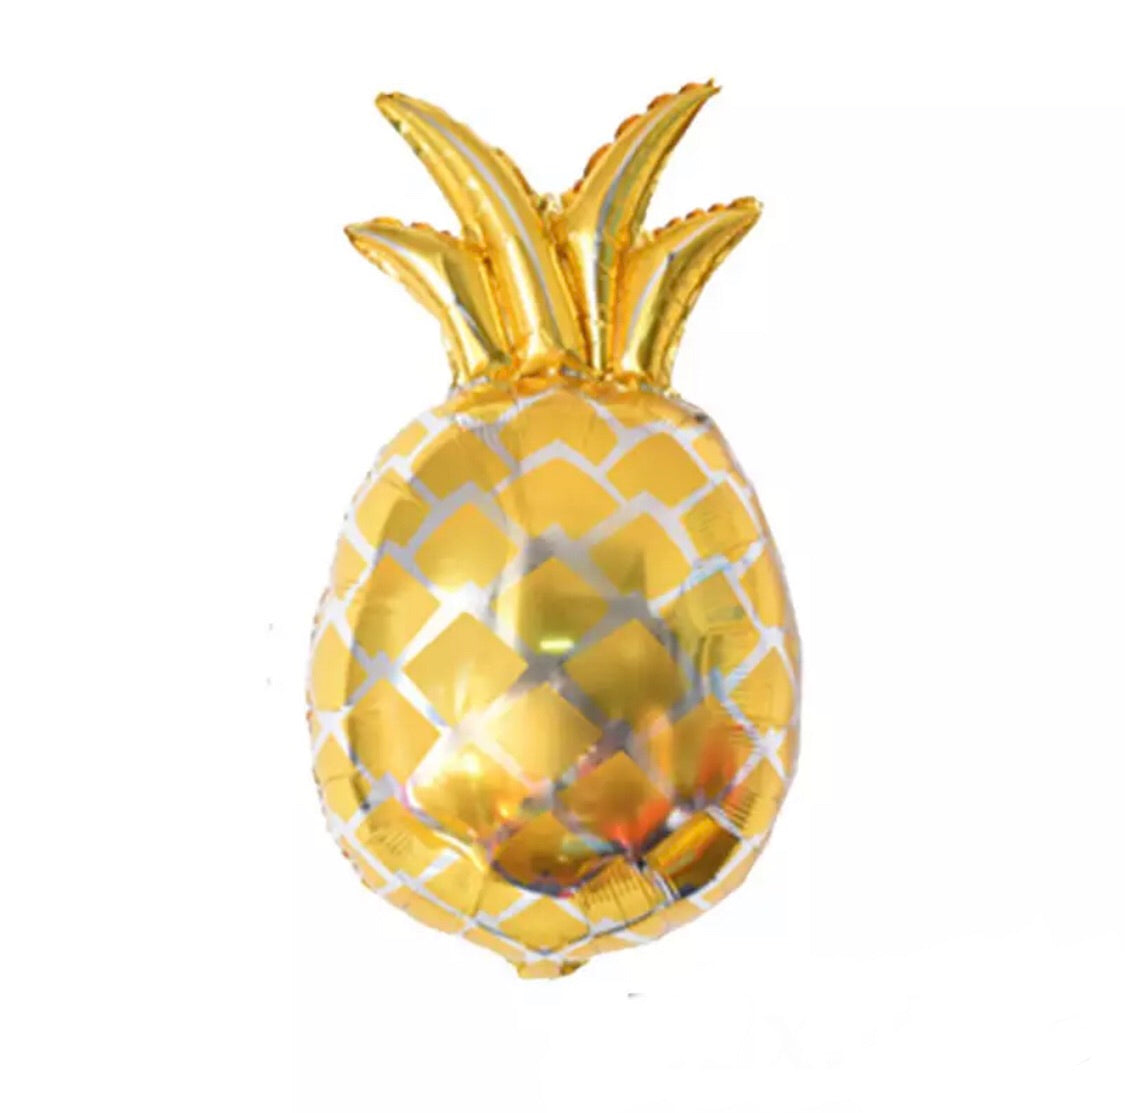 Jumbo pineapple balloon - gold